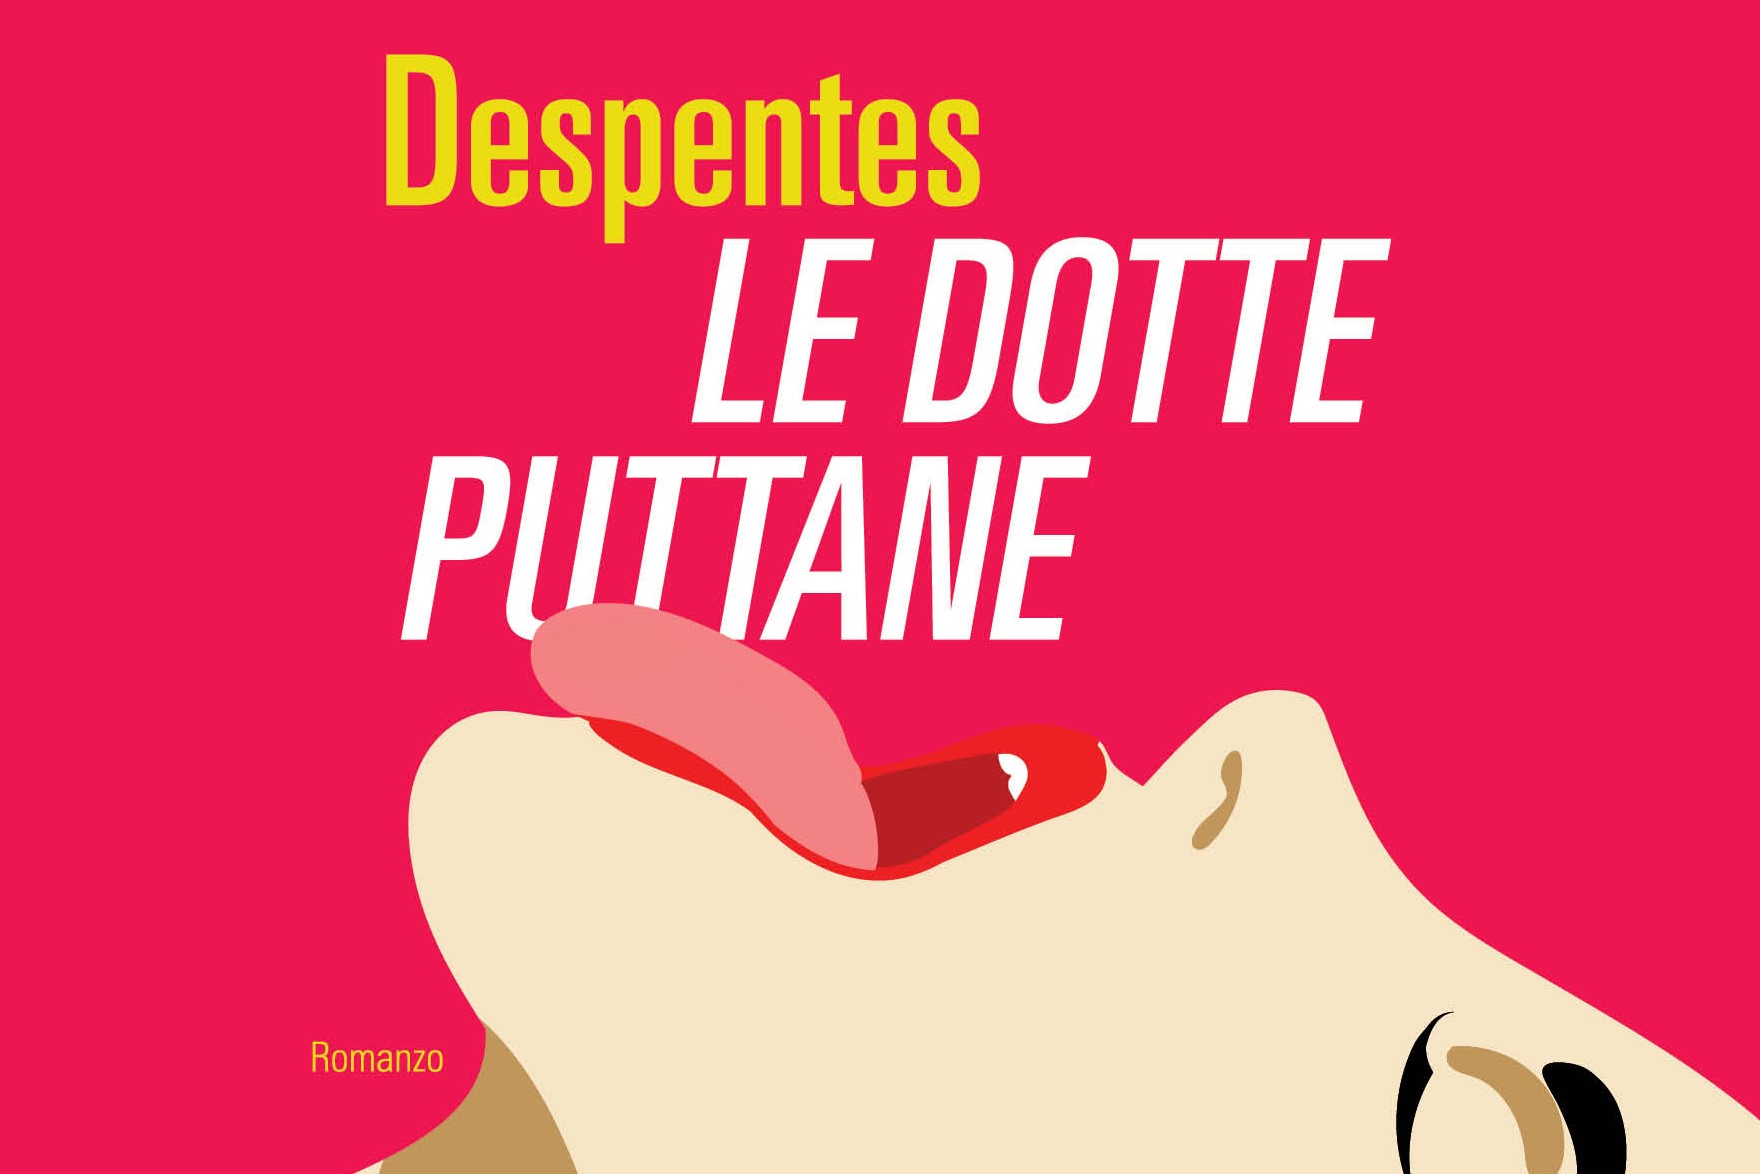 Libro Le dotte puttane, il thriller a luci rosse di Virginie Despentes in libreria